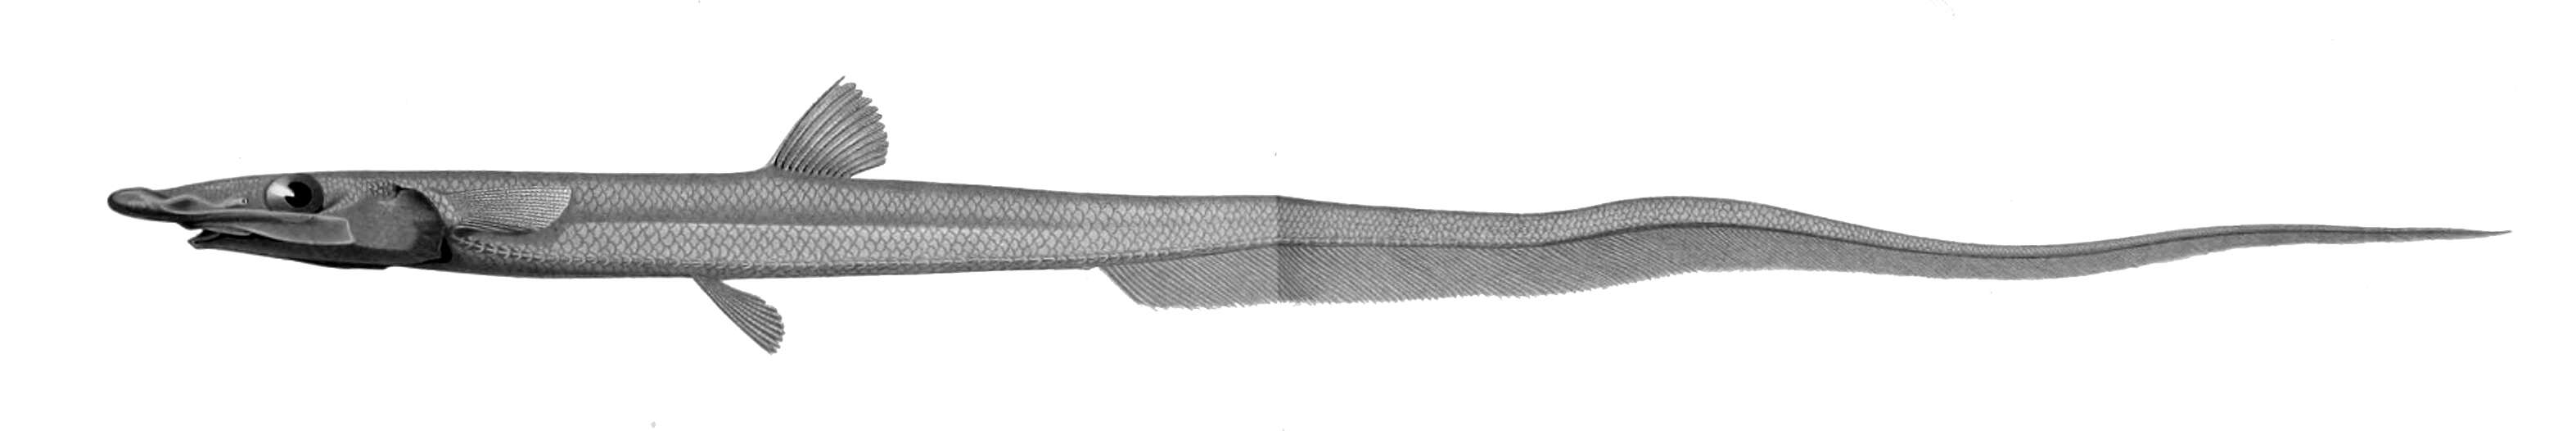 Image of Halosaur